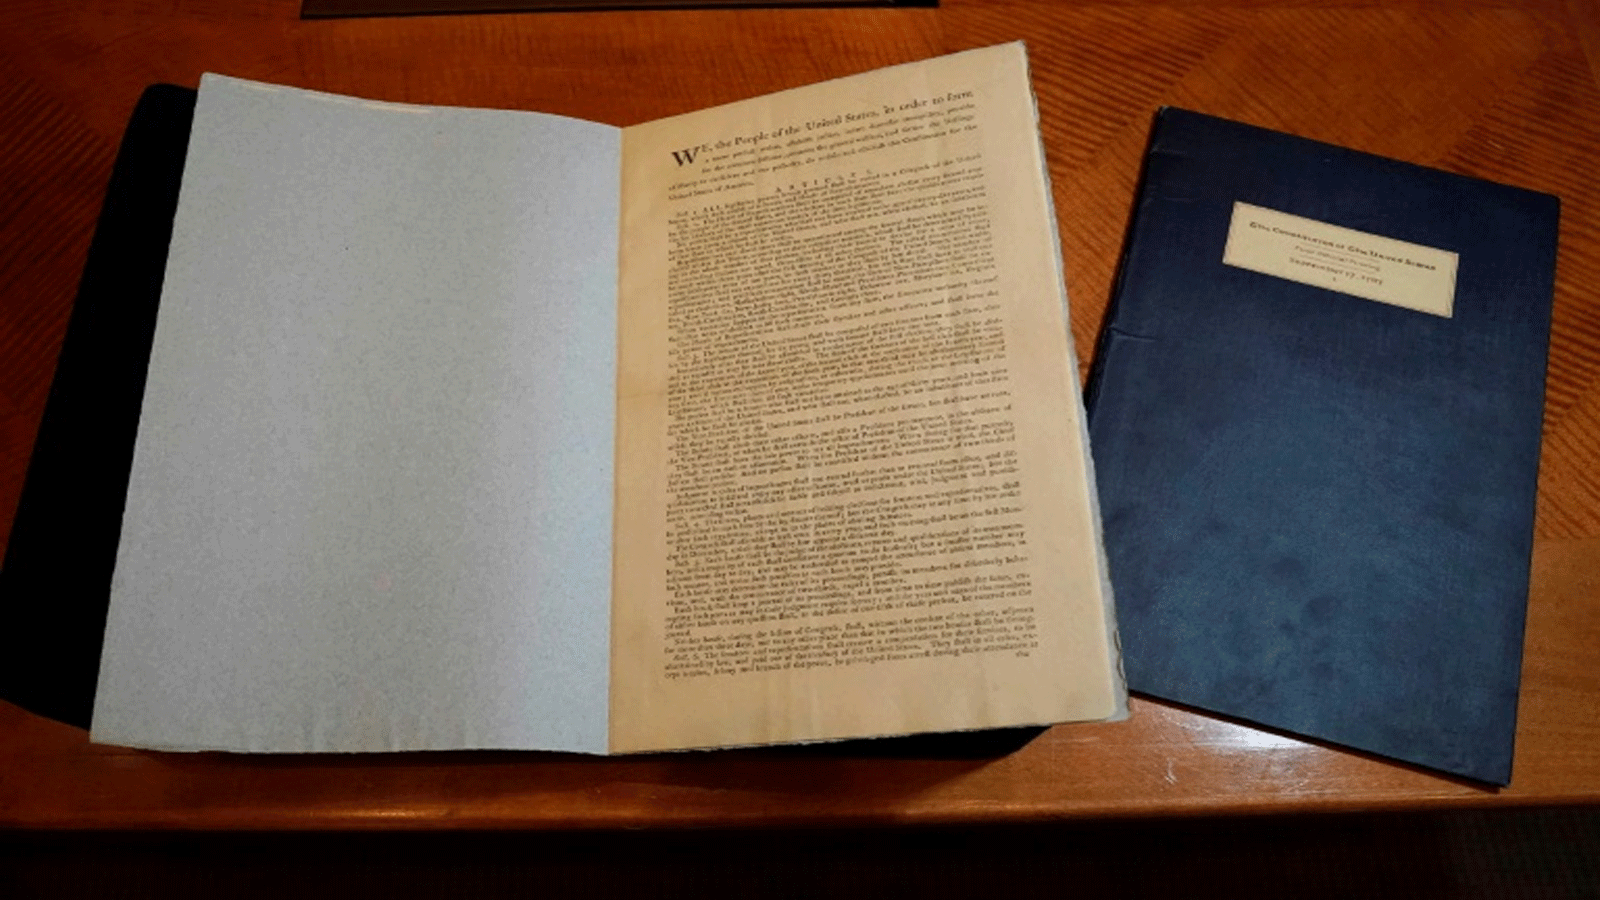 نسخة أصلية نادرة من دستور الولايات المتحدة لعام 1787، تم تصويرها في دار سوذبيز\ نيويورك بتاريخ 31 أكتوبر 2022، قبل مزادها المقرر في 13 كانون الأول\ ديسمبر مقابل 20 مليون دولار إلى 30 مليون دولار